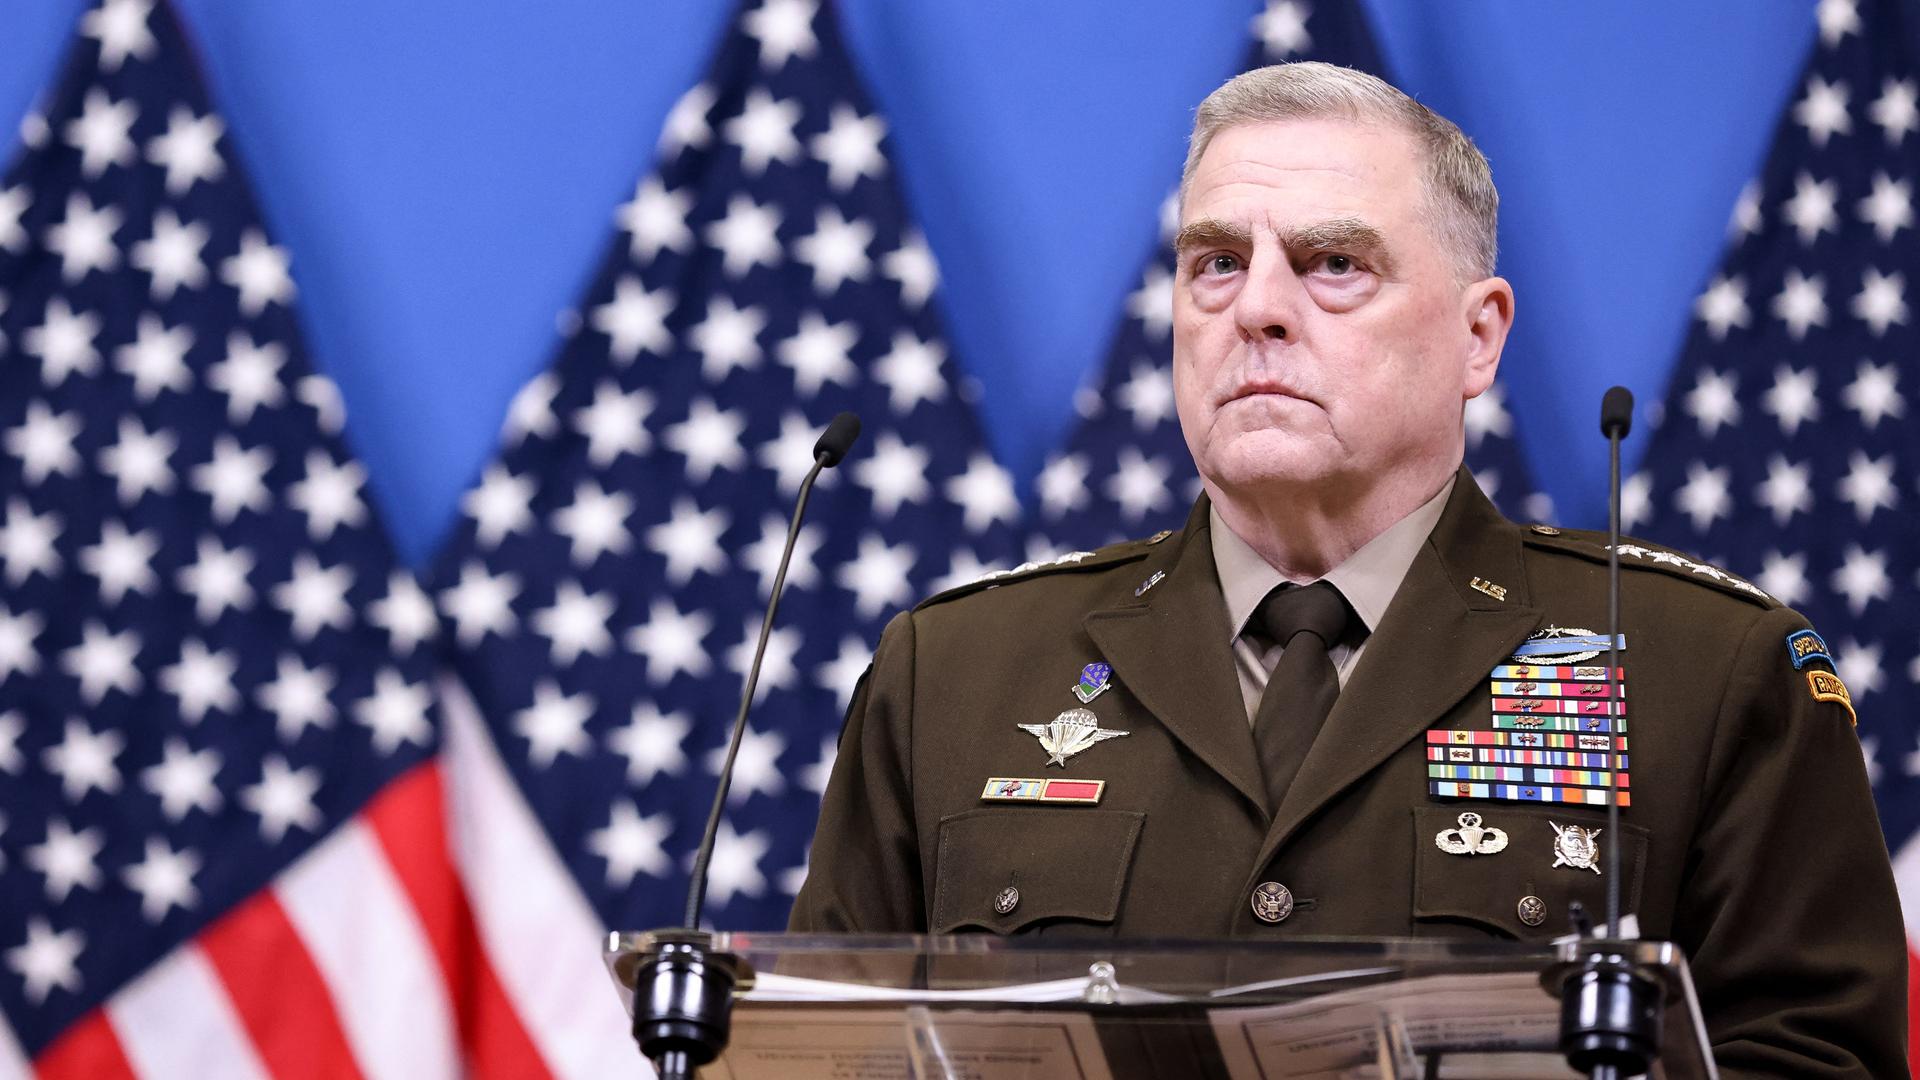 Der Chef des Joint Chiefs of Staff, US-General Mark Milley, ist im Bild zu sehen.